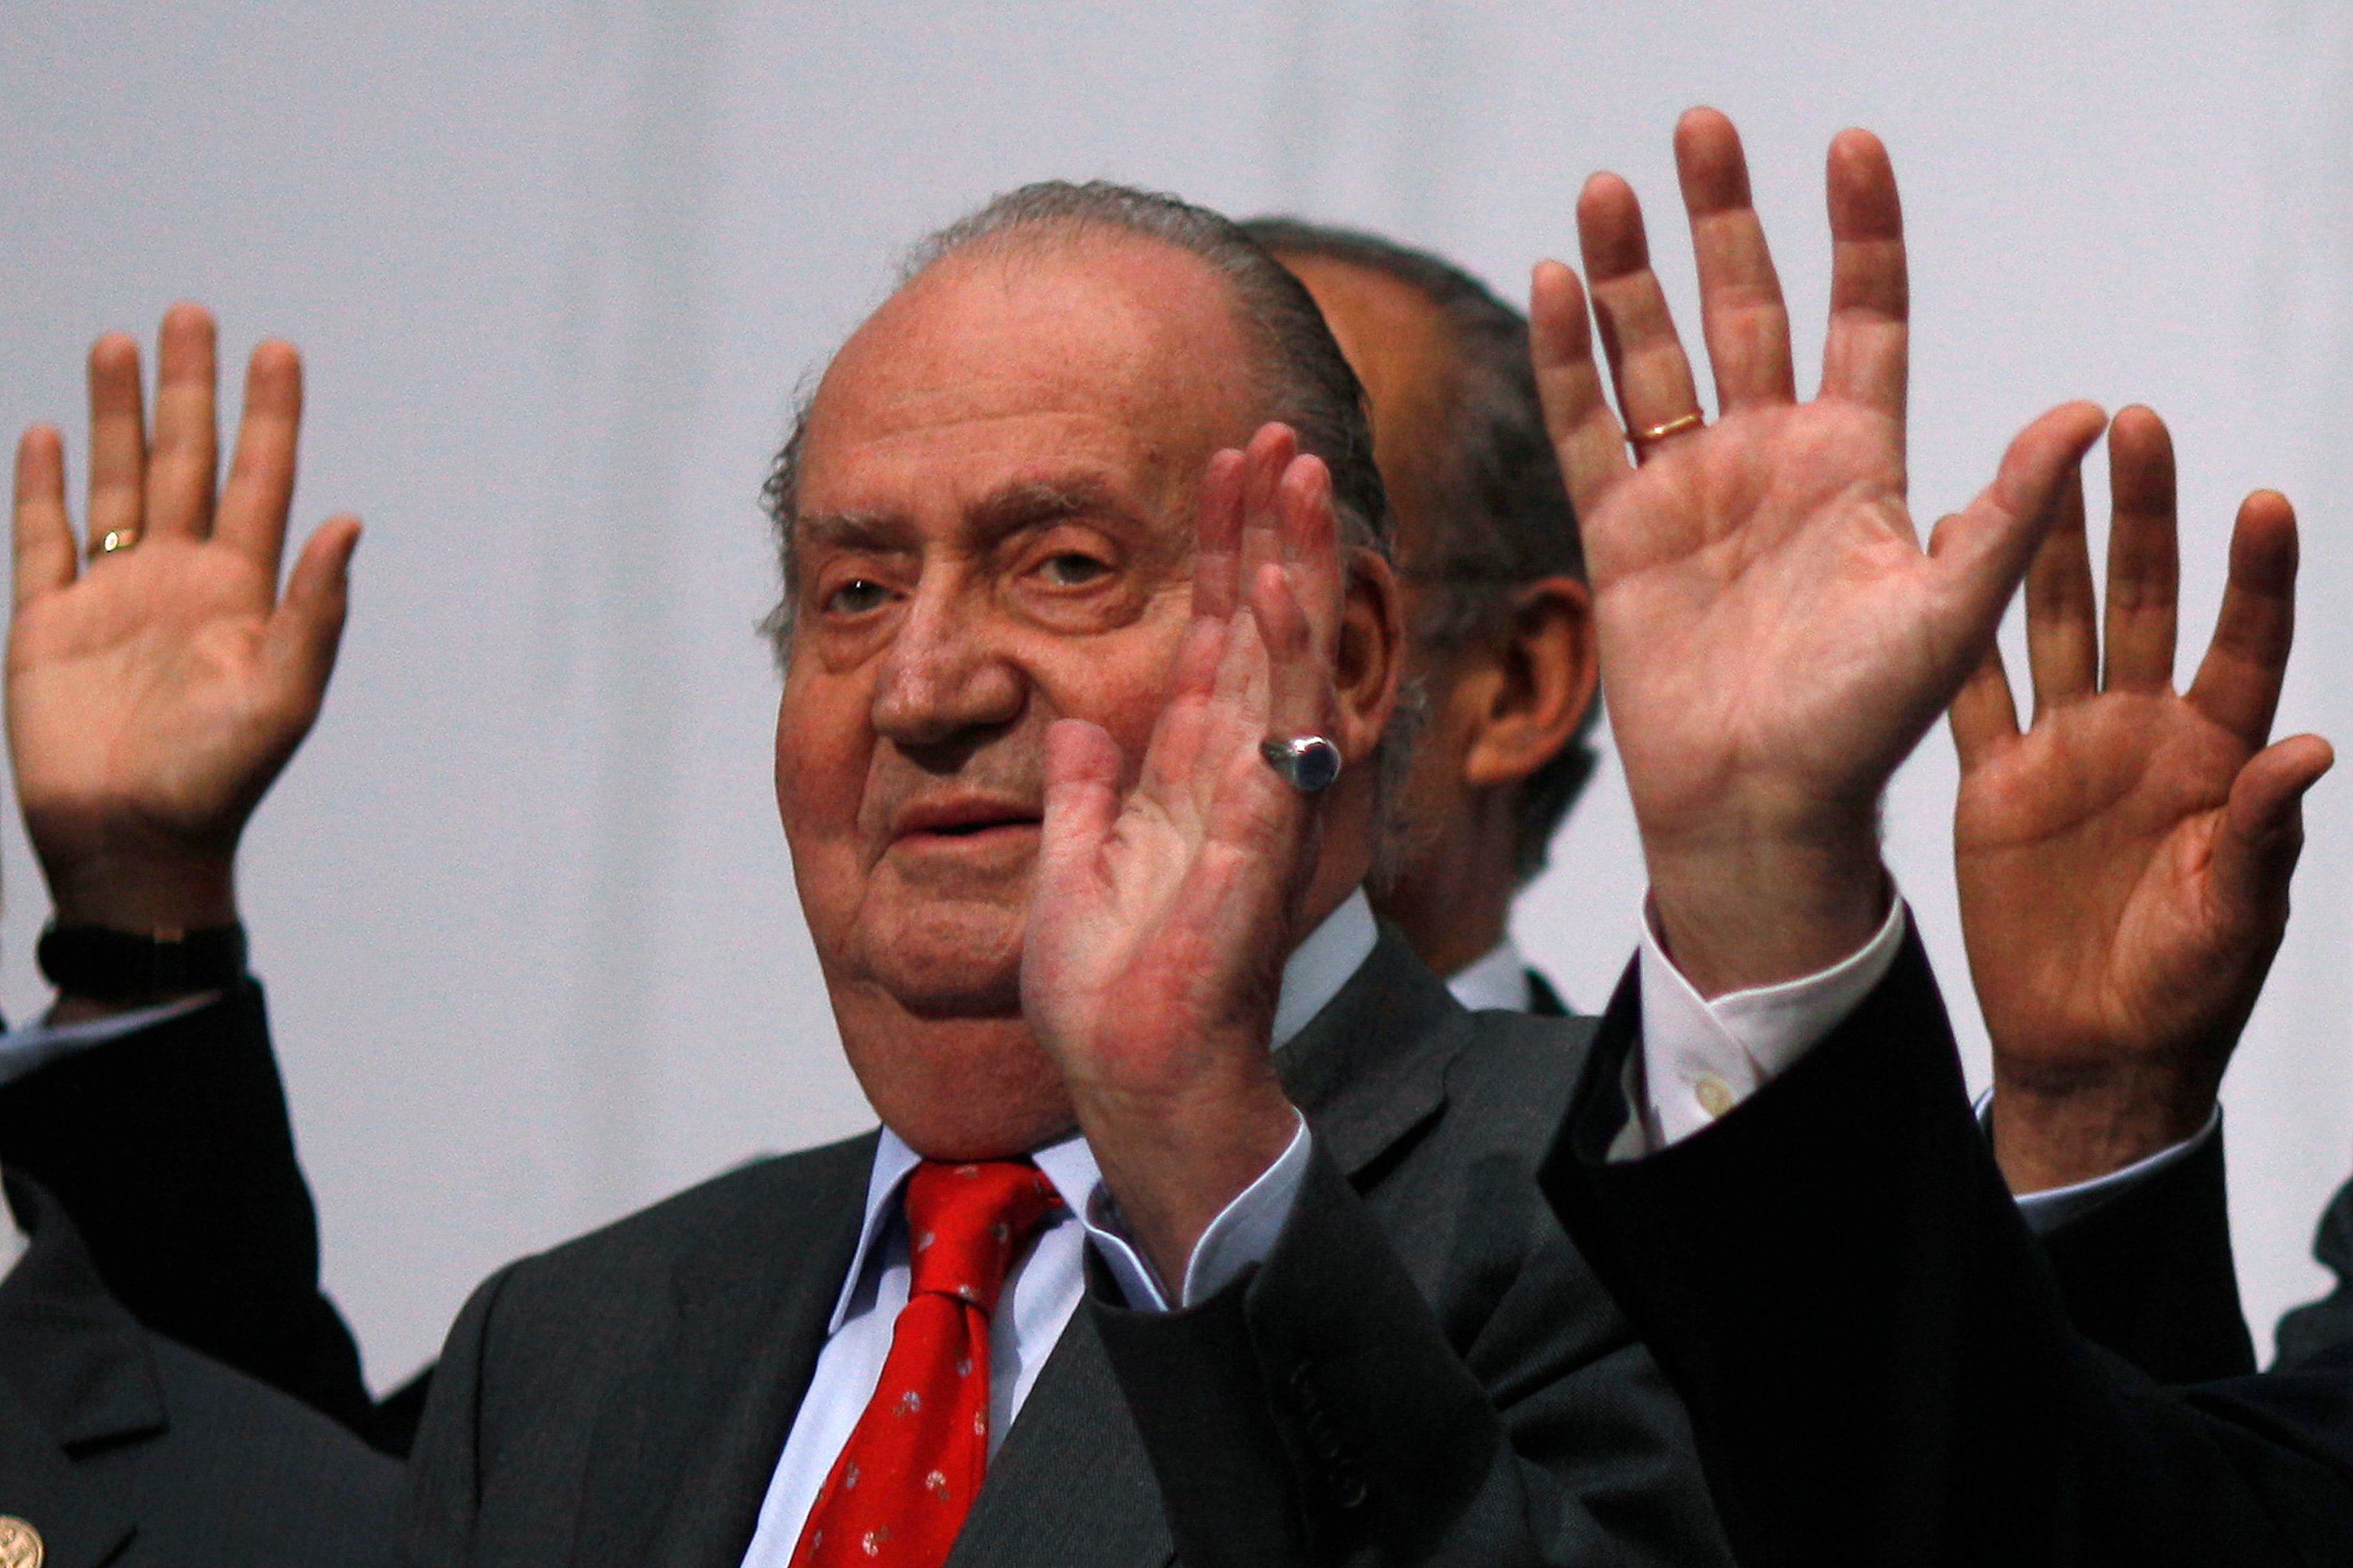 La cuenta de Andorra del rey Juan Carlos I escondía 10 millones de euros